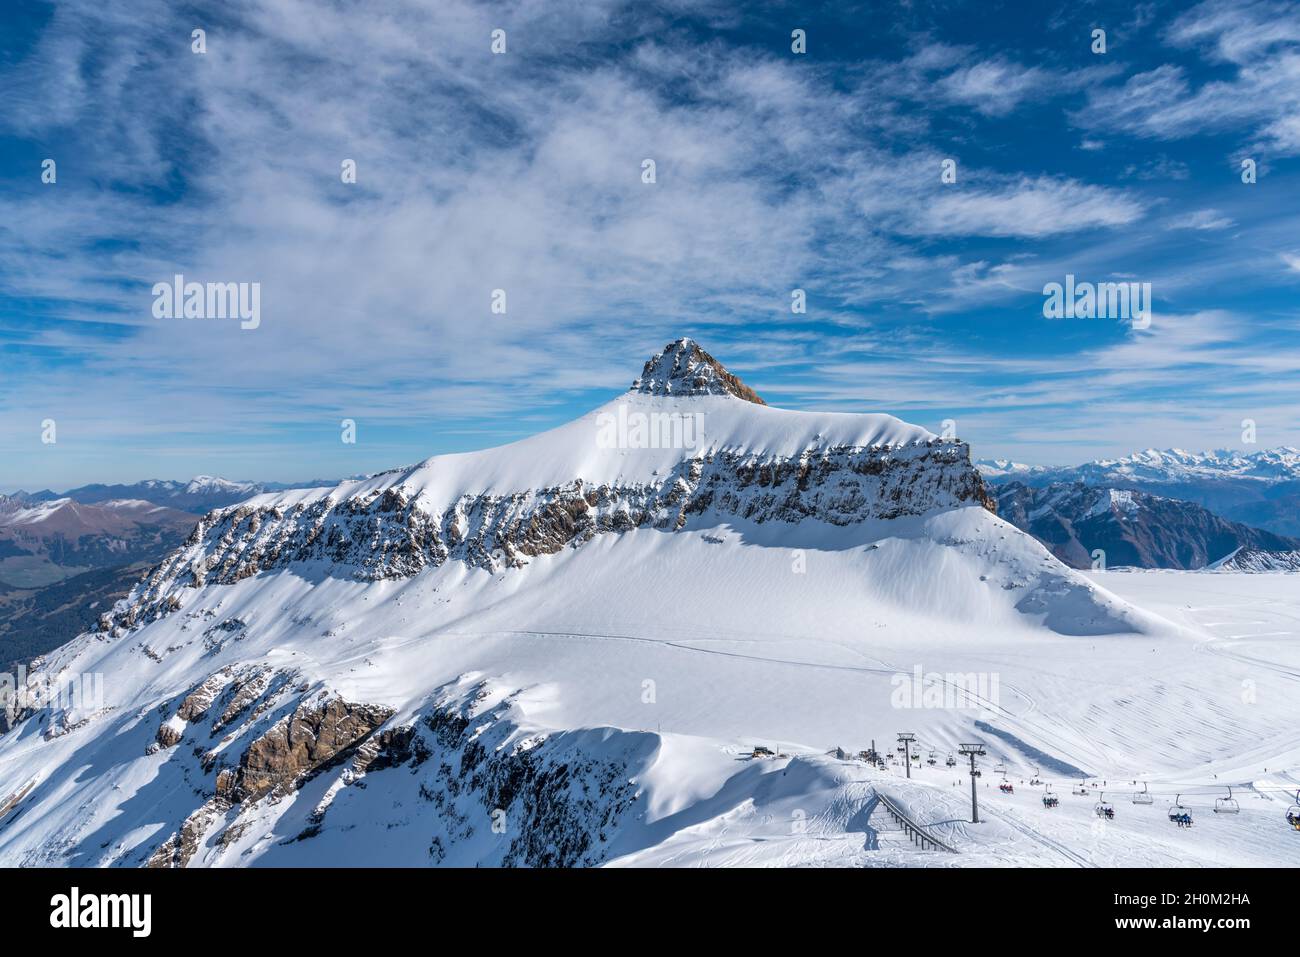 Une journée d'hiver sur le glacier de Diablerets à 3000 mètres au-dessus du niveau de la mer en Suisse avec un ciel bleu avec des nuages. Banque D'Images